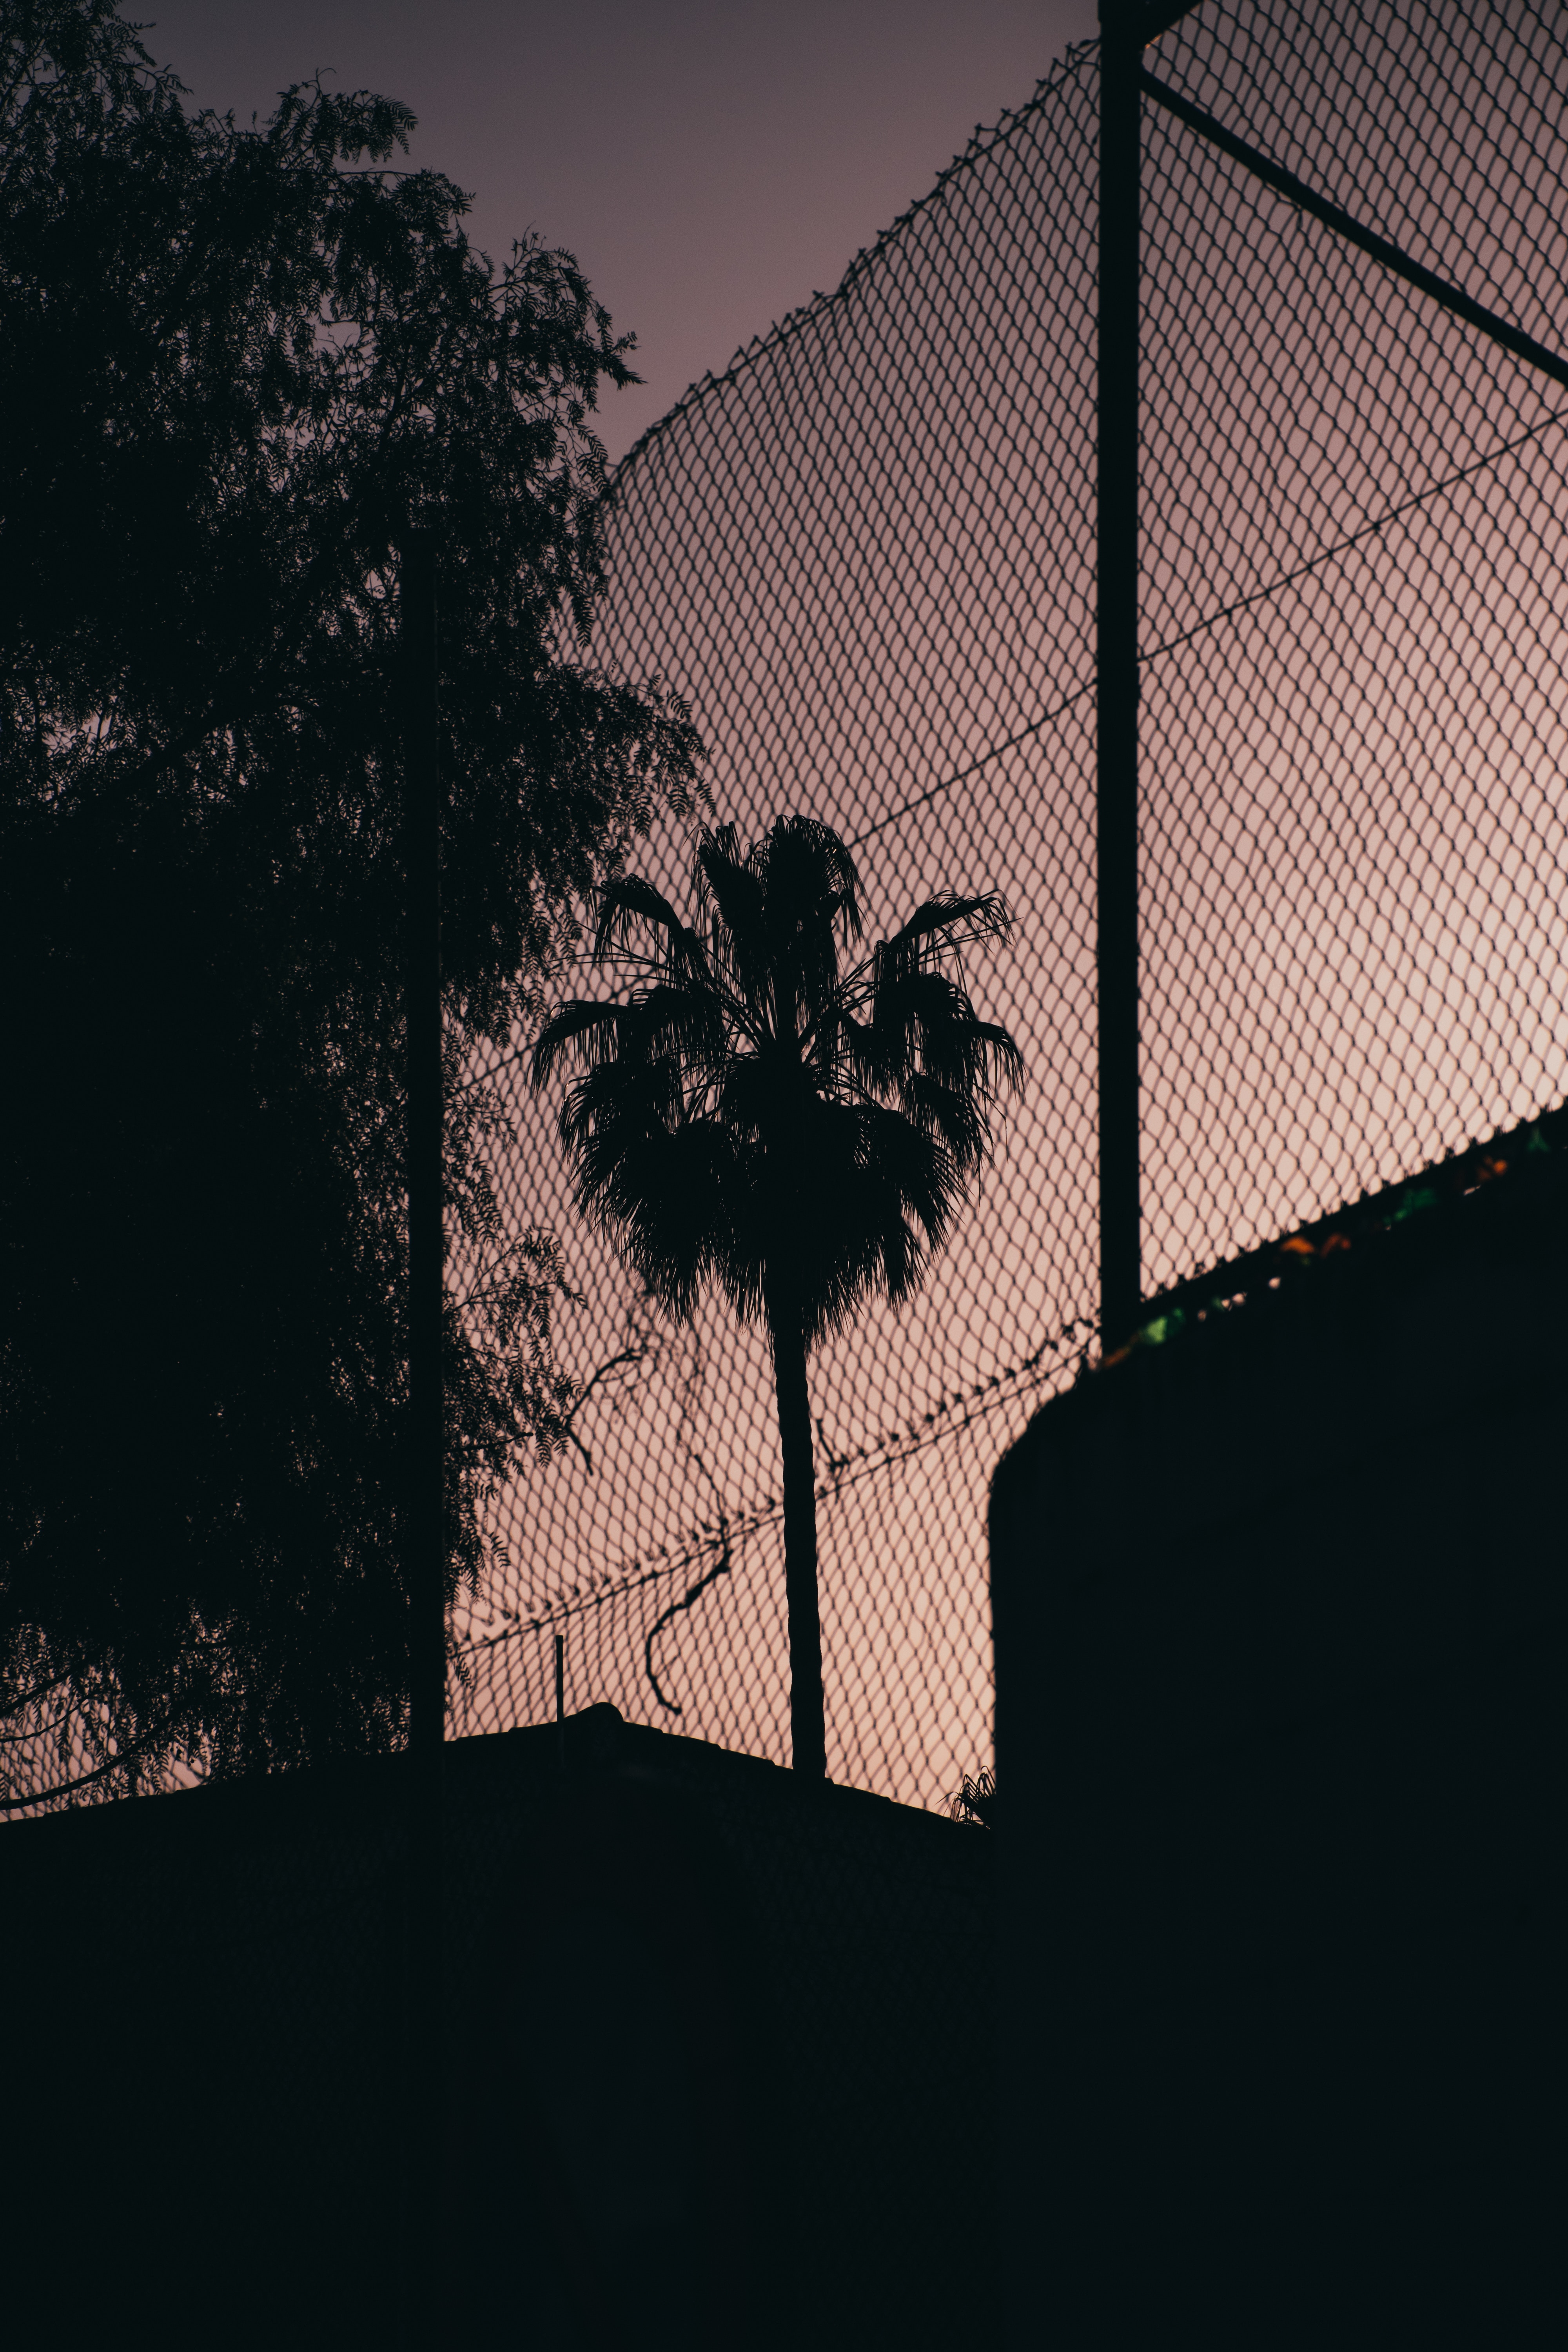 palm, dark, night, grid, fence, darkness